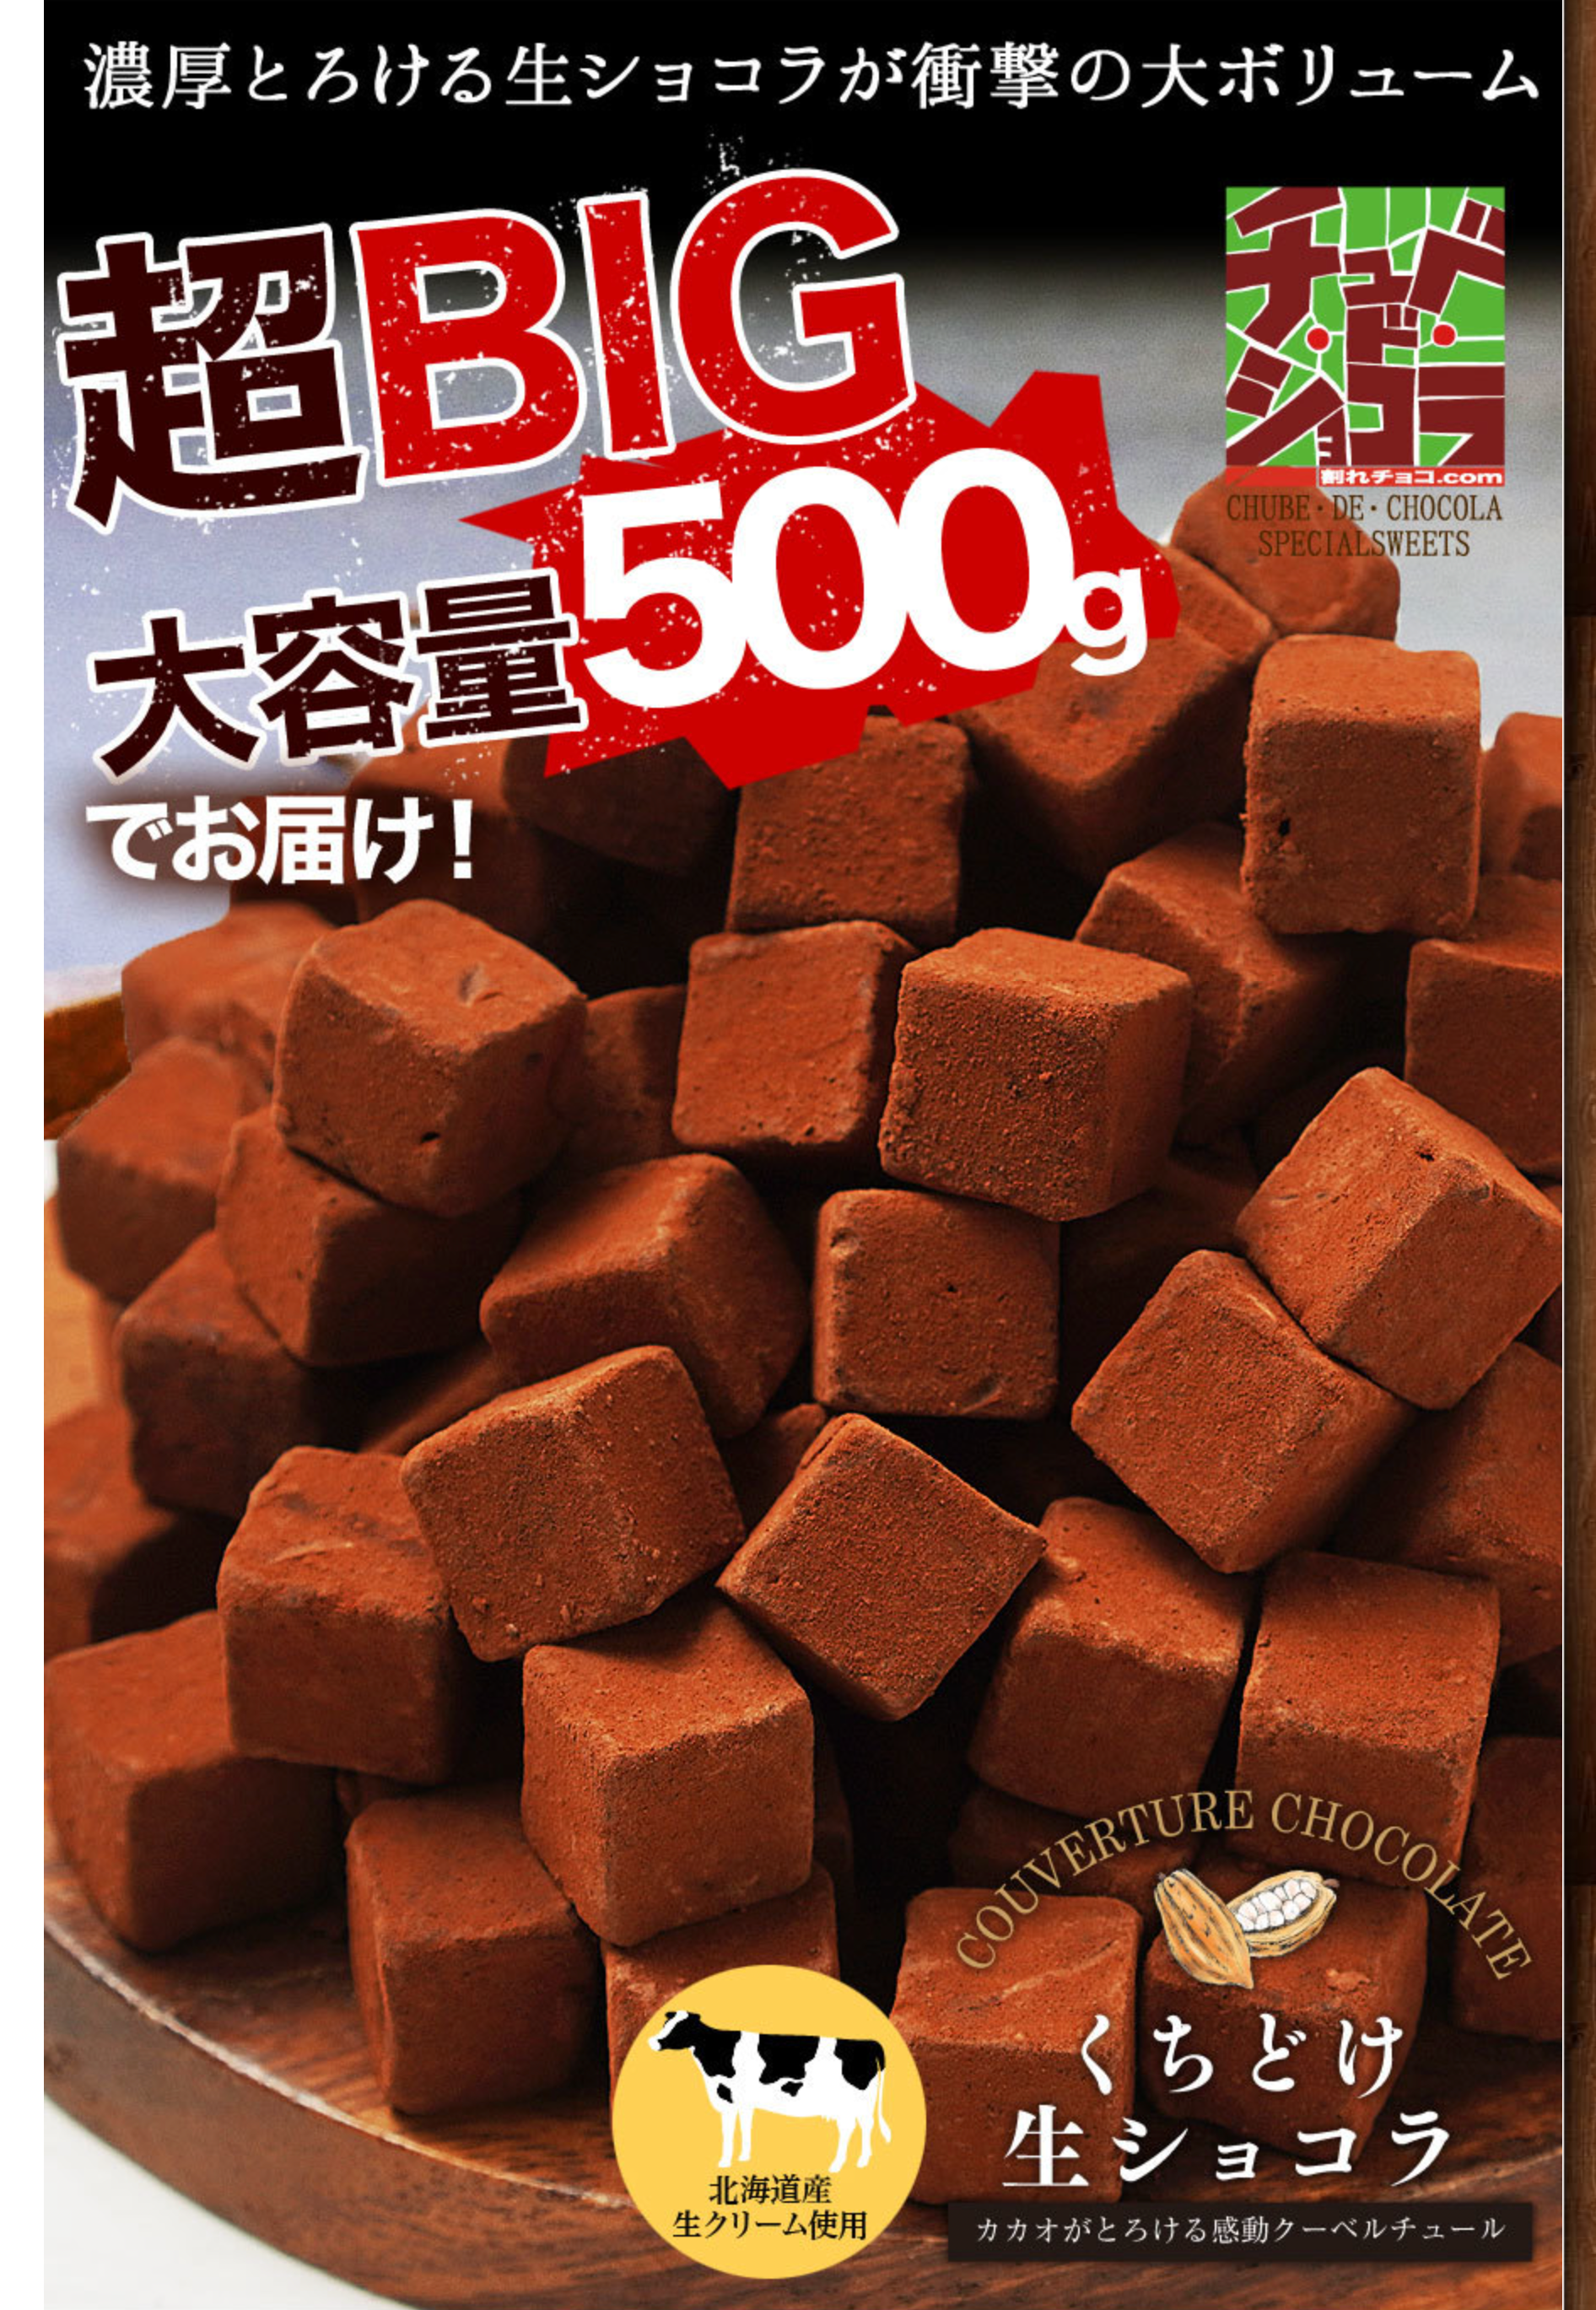 【くちどけ生ショコラ-500g】-チュベ・ド・ショコラ-割れチョコ一覧-チュベ・ド・ショコラ